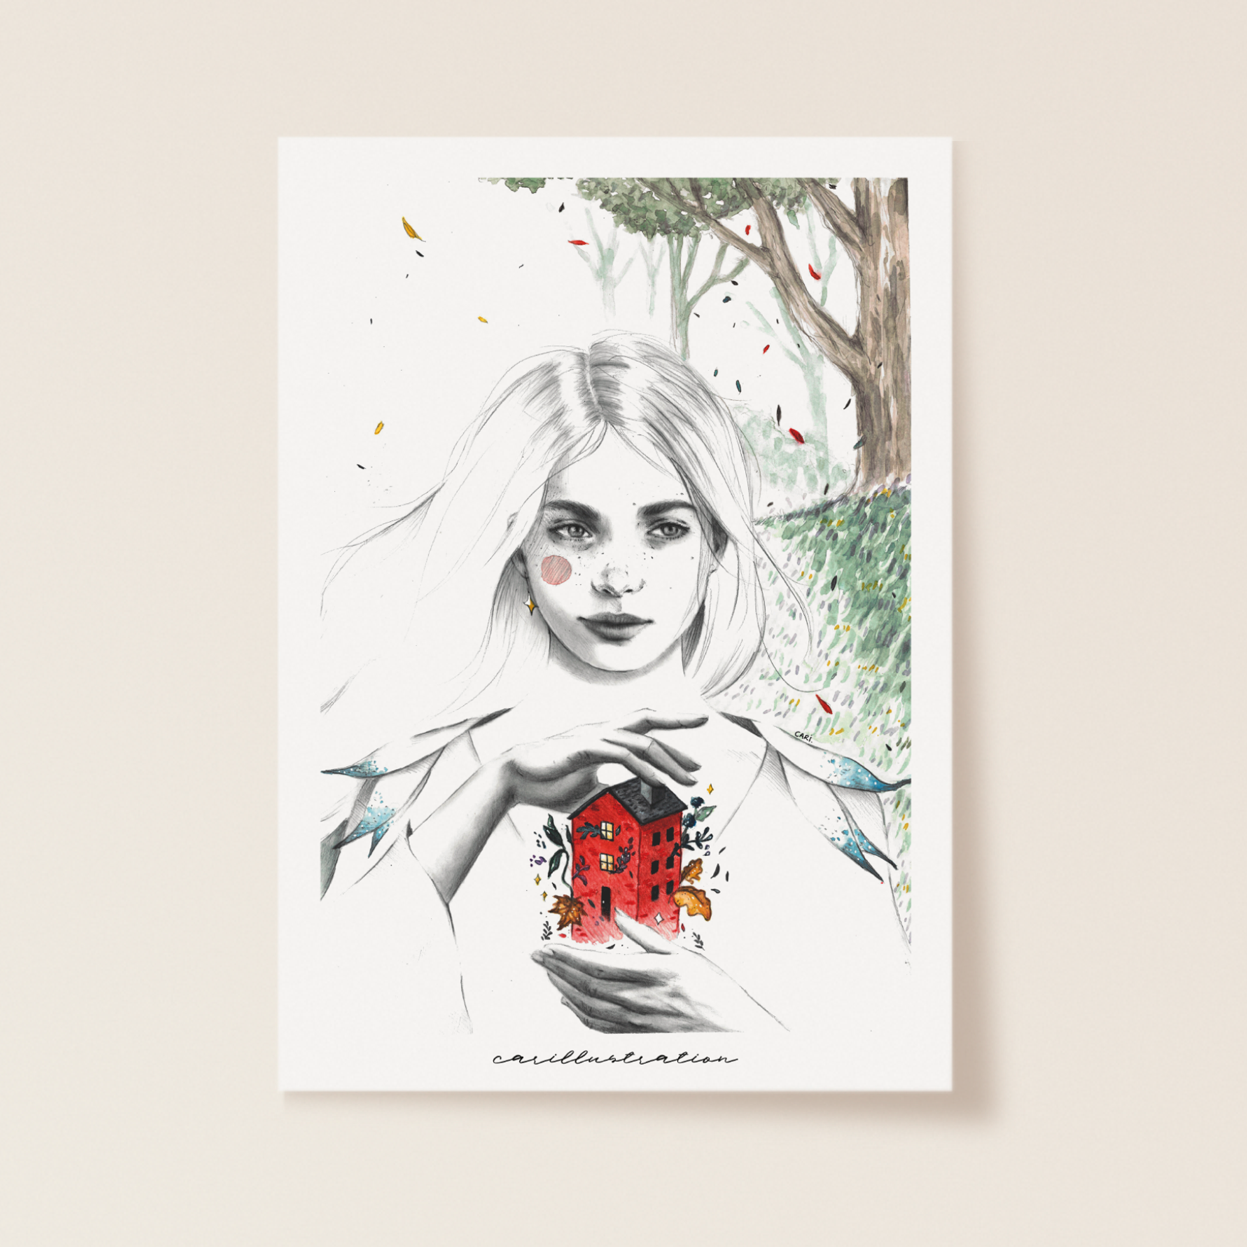 lámina ilustracion a mano carillustration acuarela y tinta chica peliblanca casita bosque hogar magia brujas